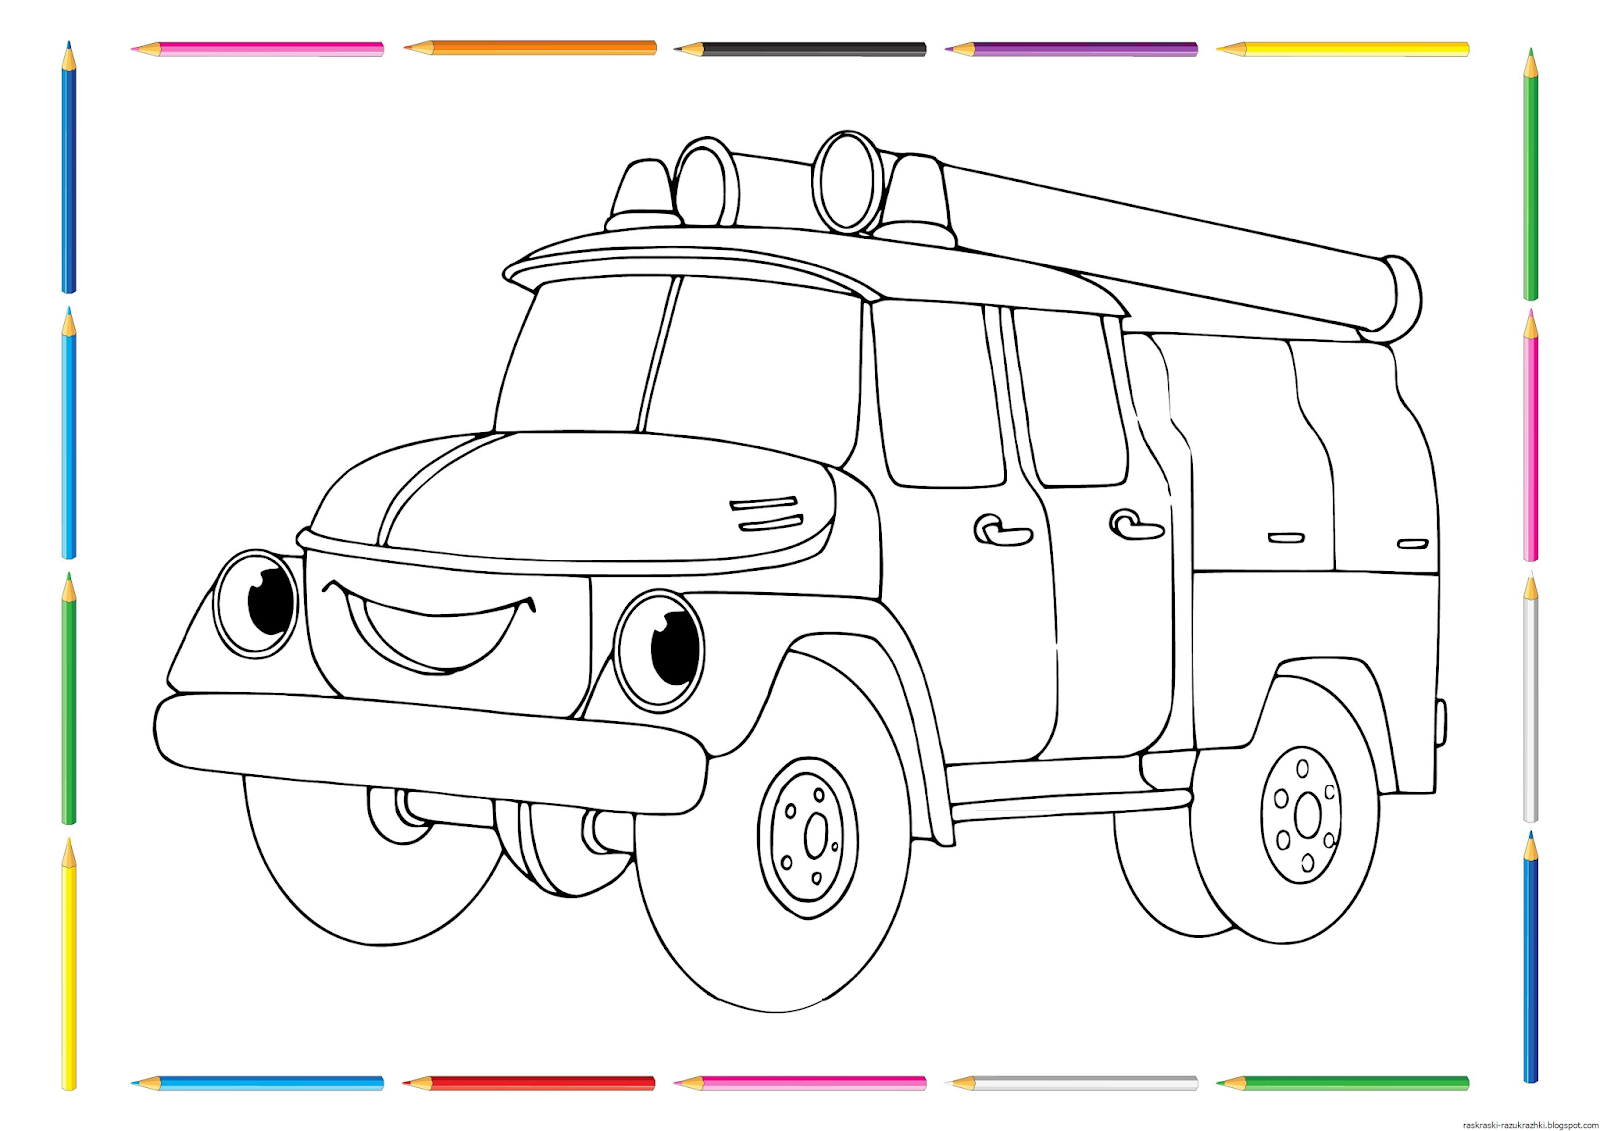 Рисунок машинки раскраска. Раскраска пожарная машина. Пожарная машина раскраска для детей. Пожарная Шамина раскраска. Рисунок машины для раскрашивания.